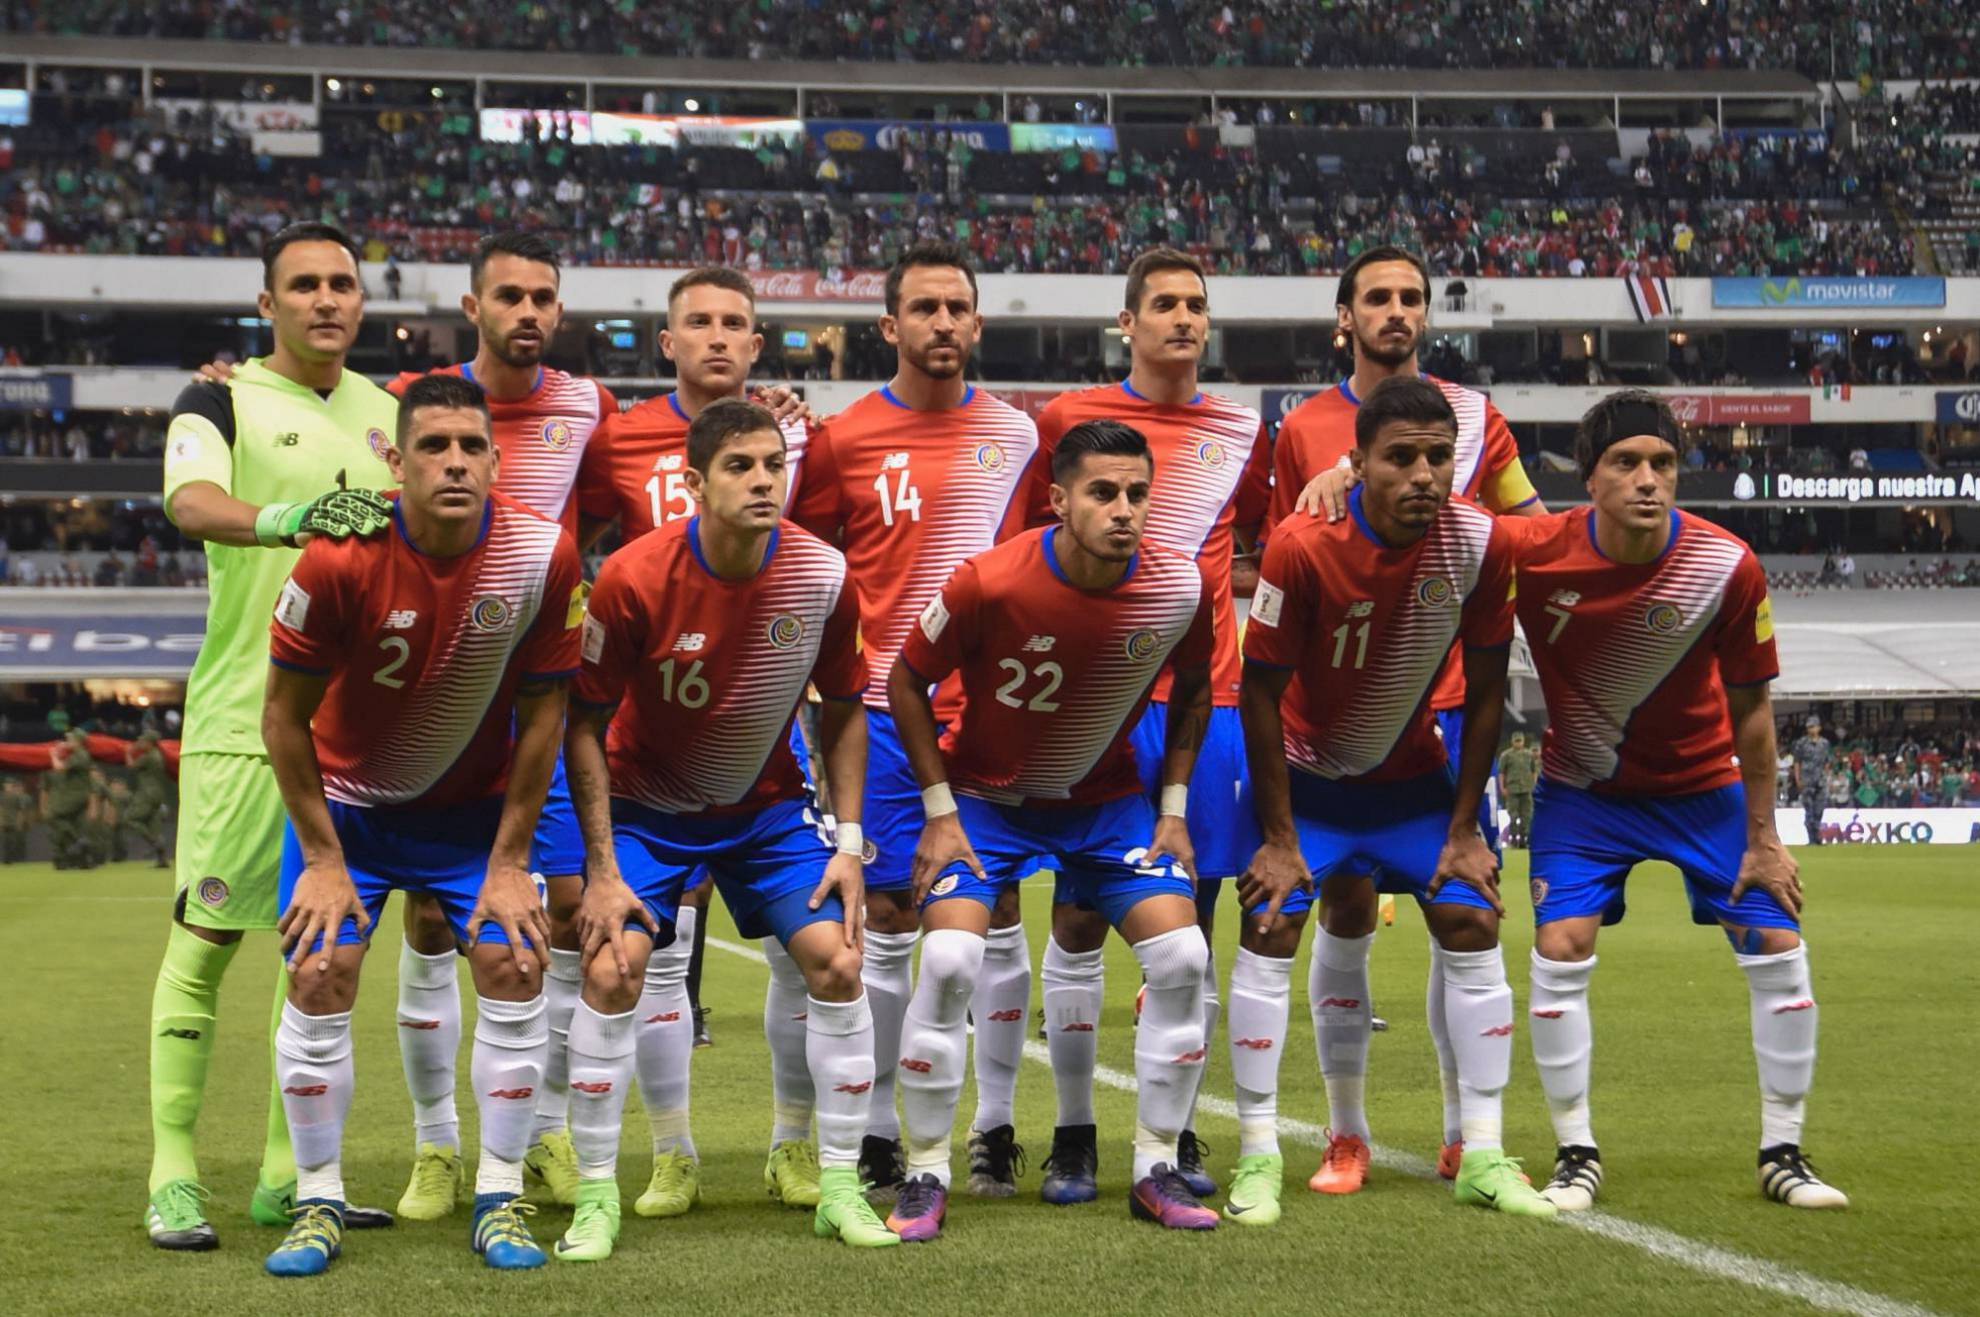 Alineación de Costa Rica en el Mundial 2018: lista y dorsales